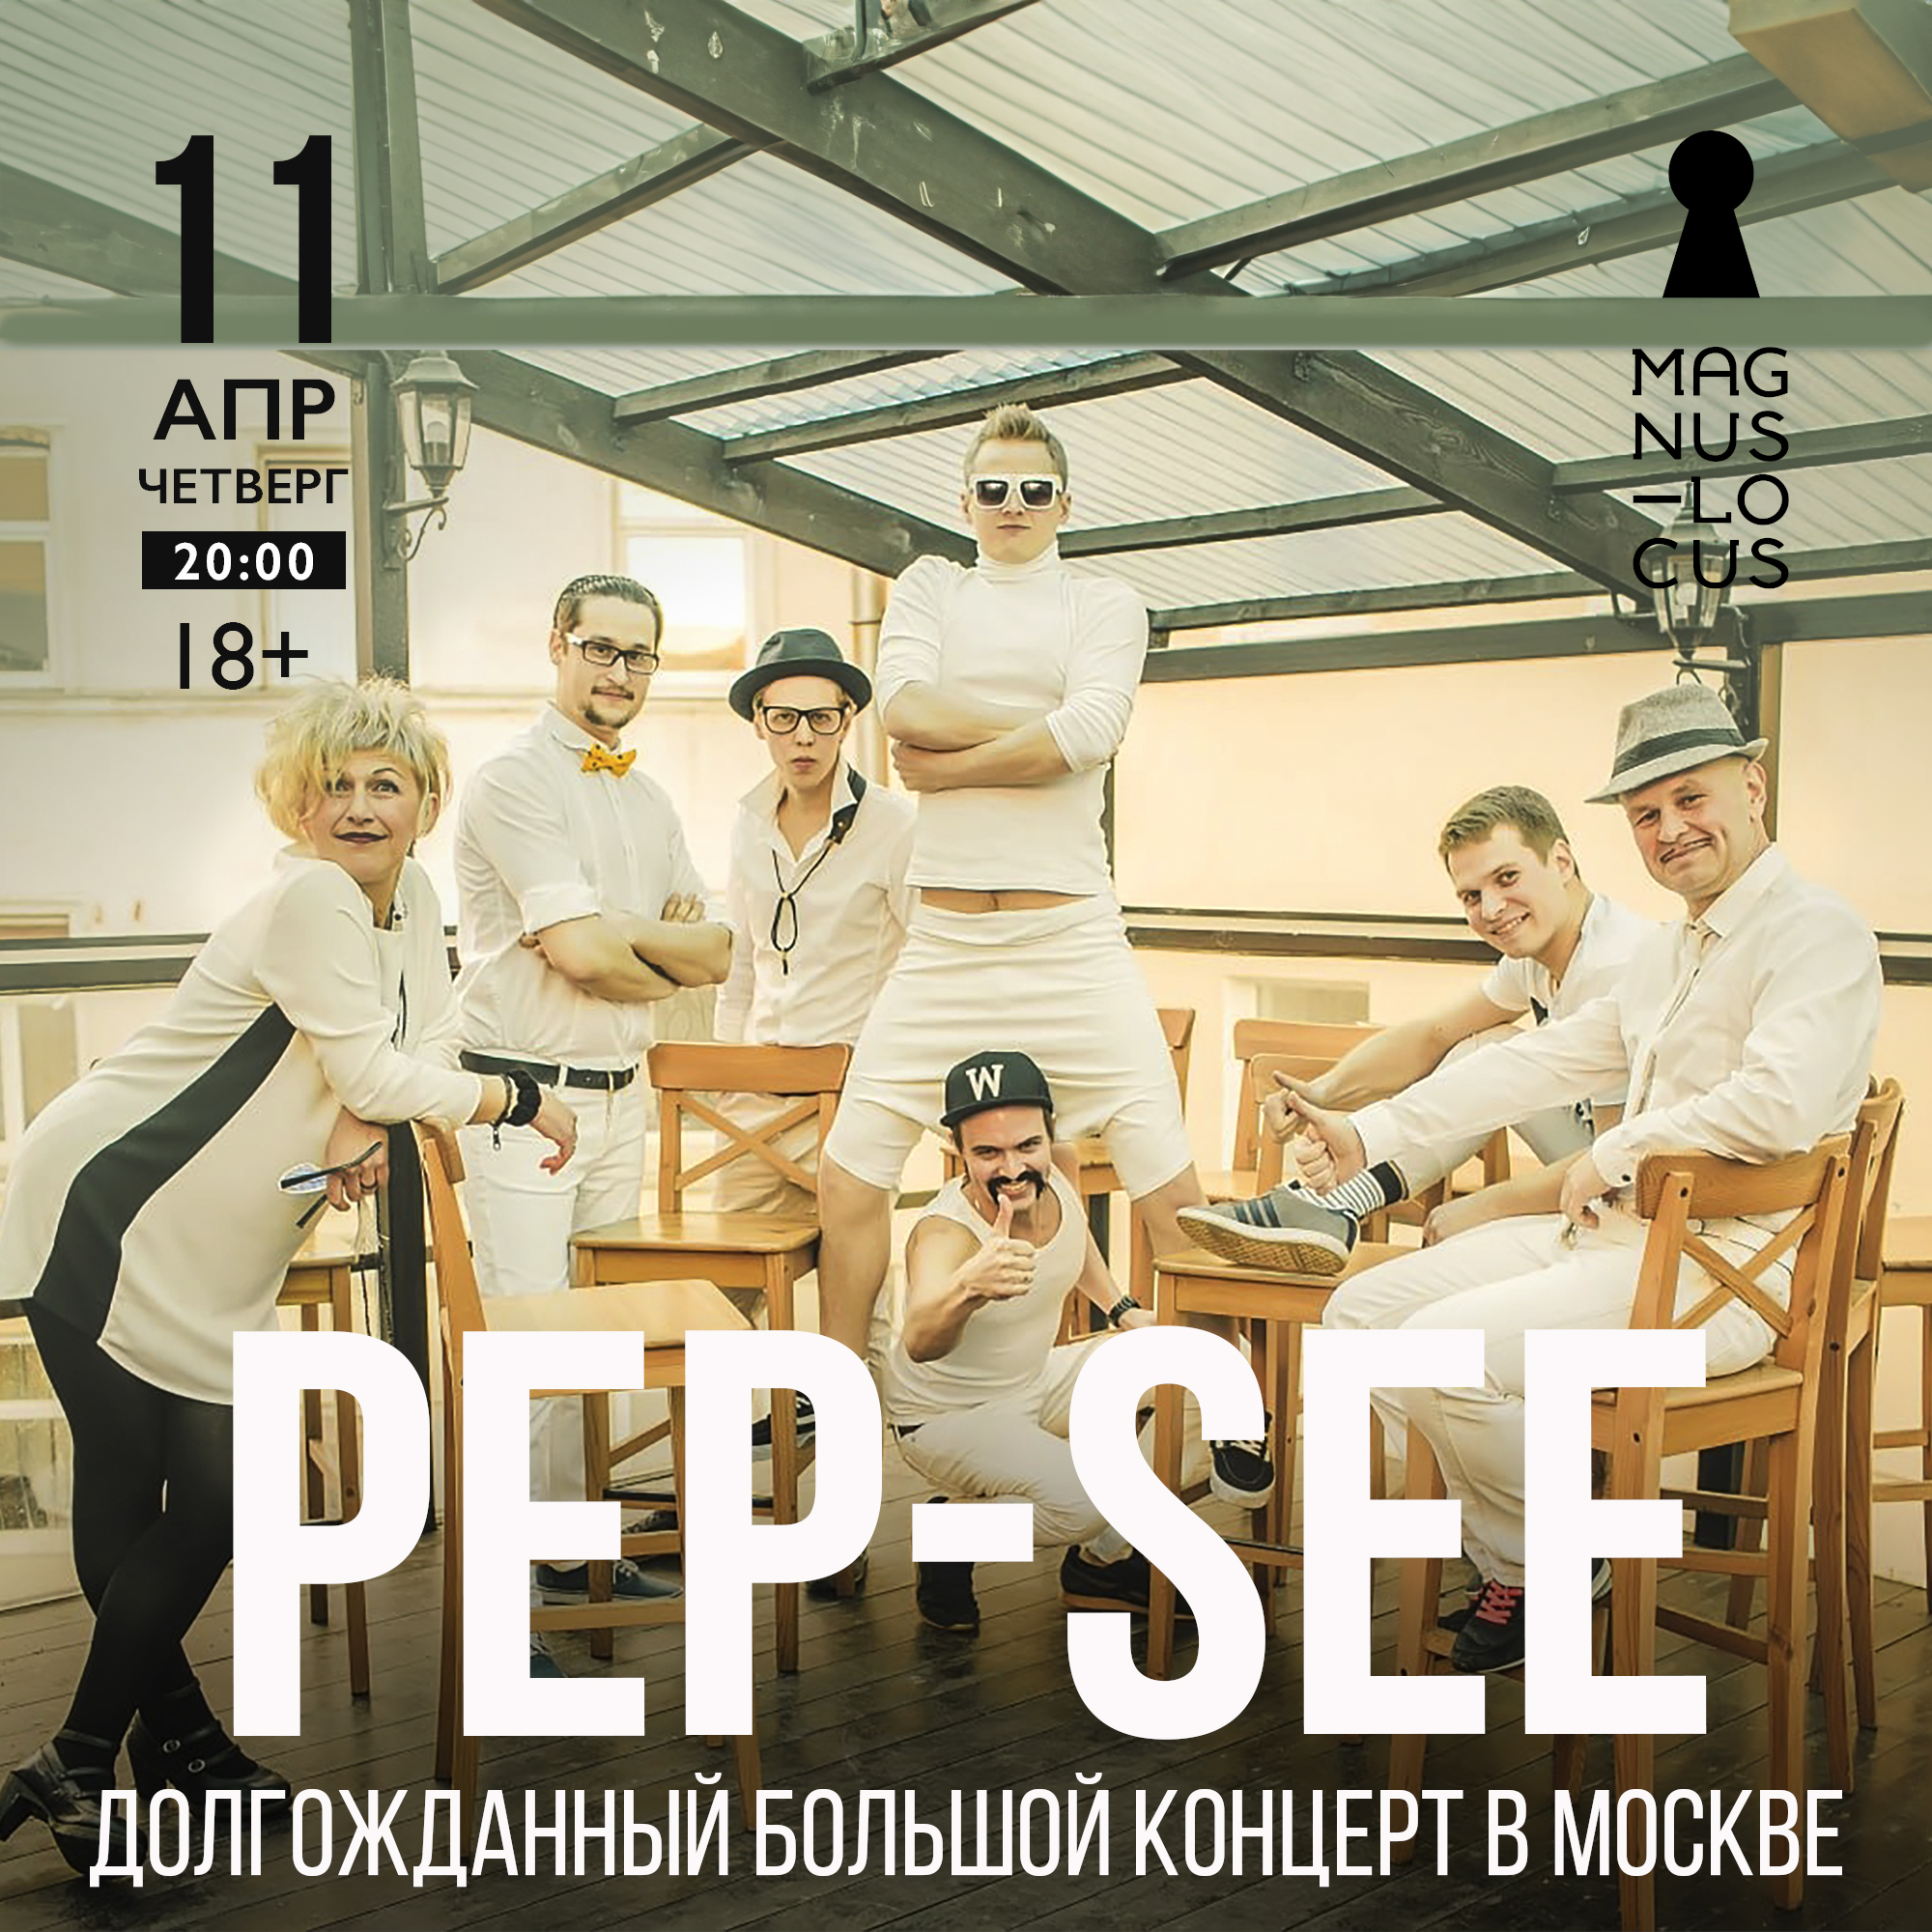 PEP-SEE Долгожданный большой концерт в Москве